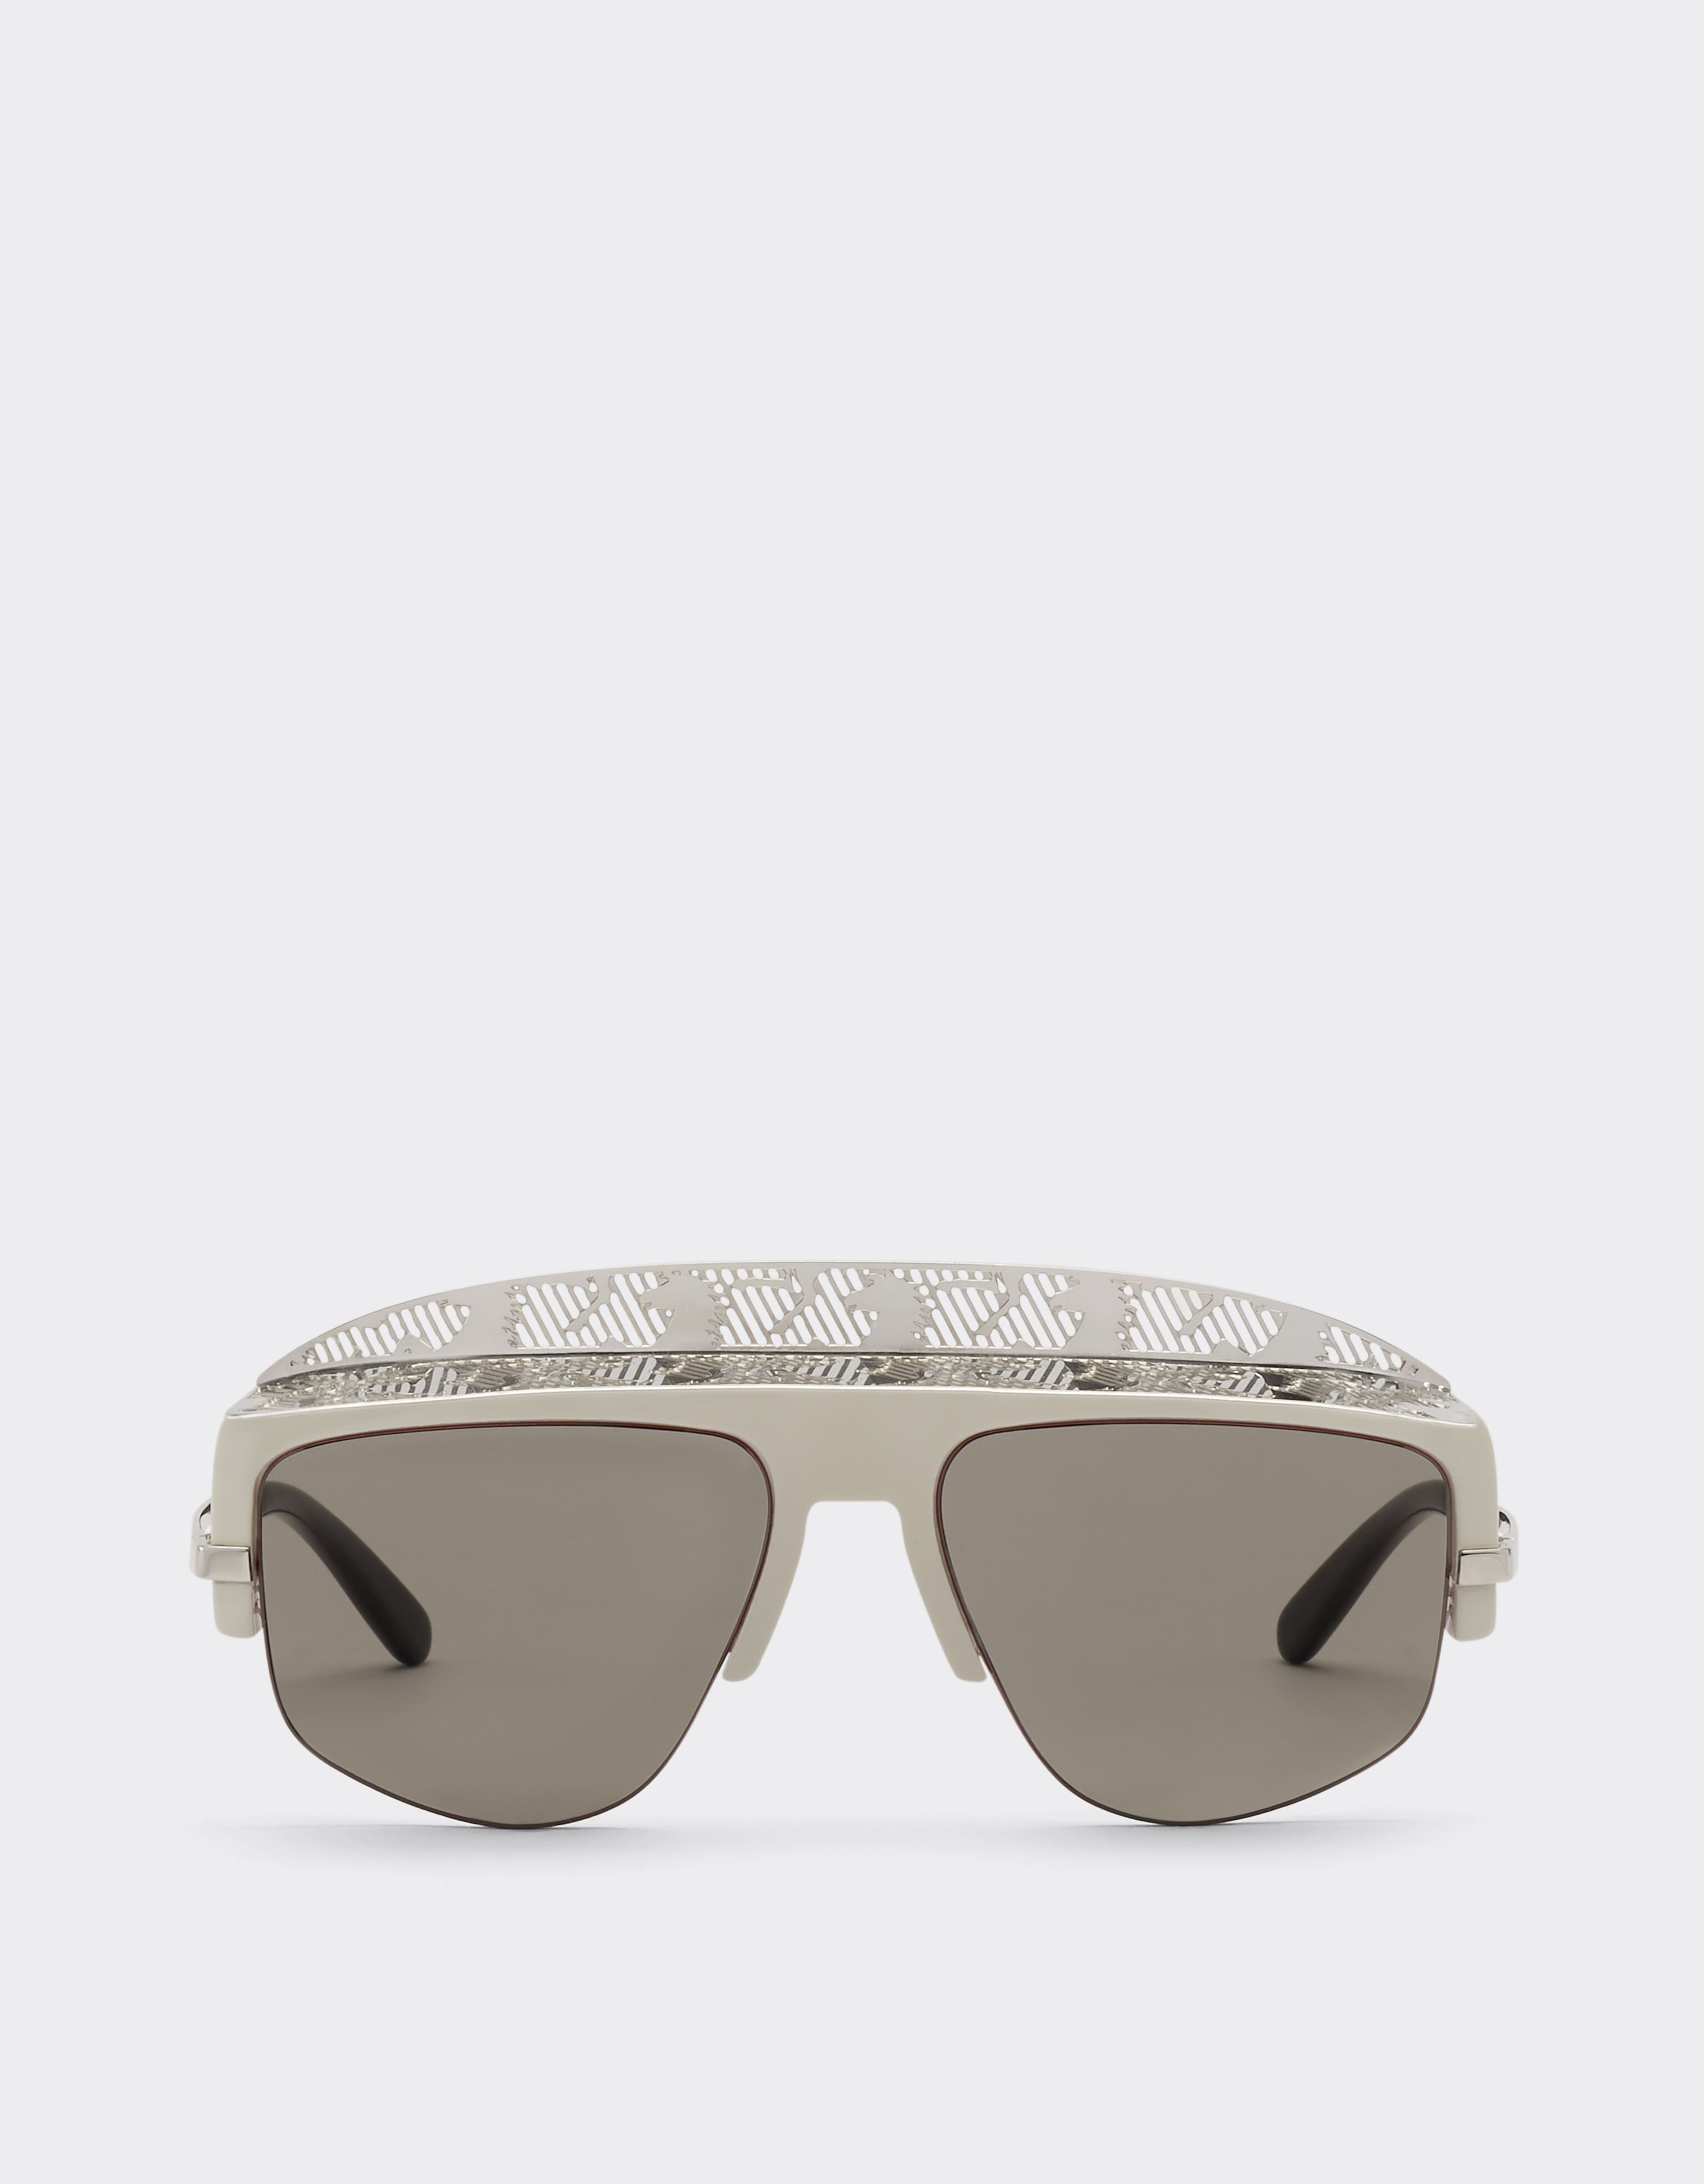 Ferrari Ferrari sunglasses with silver mirror lens Silver F1248f